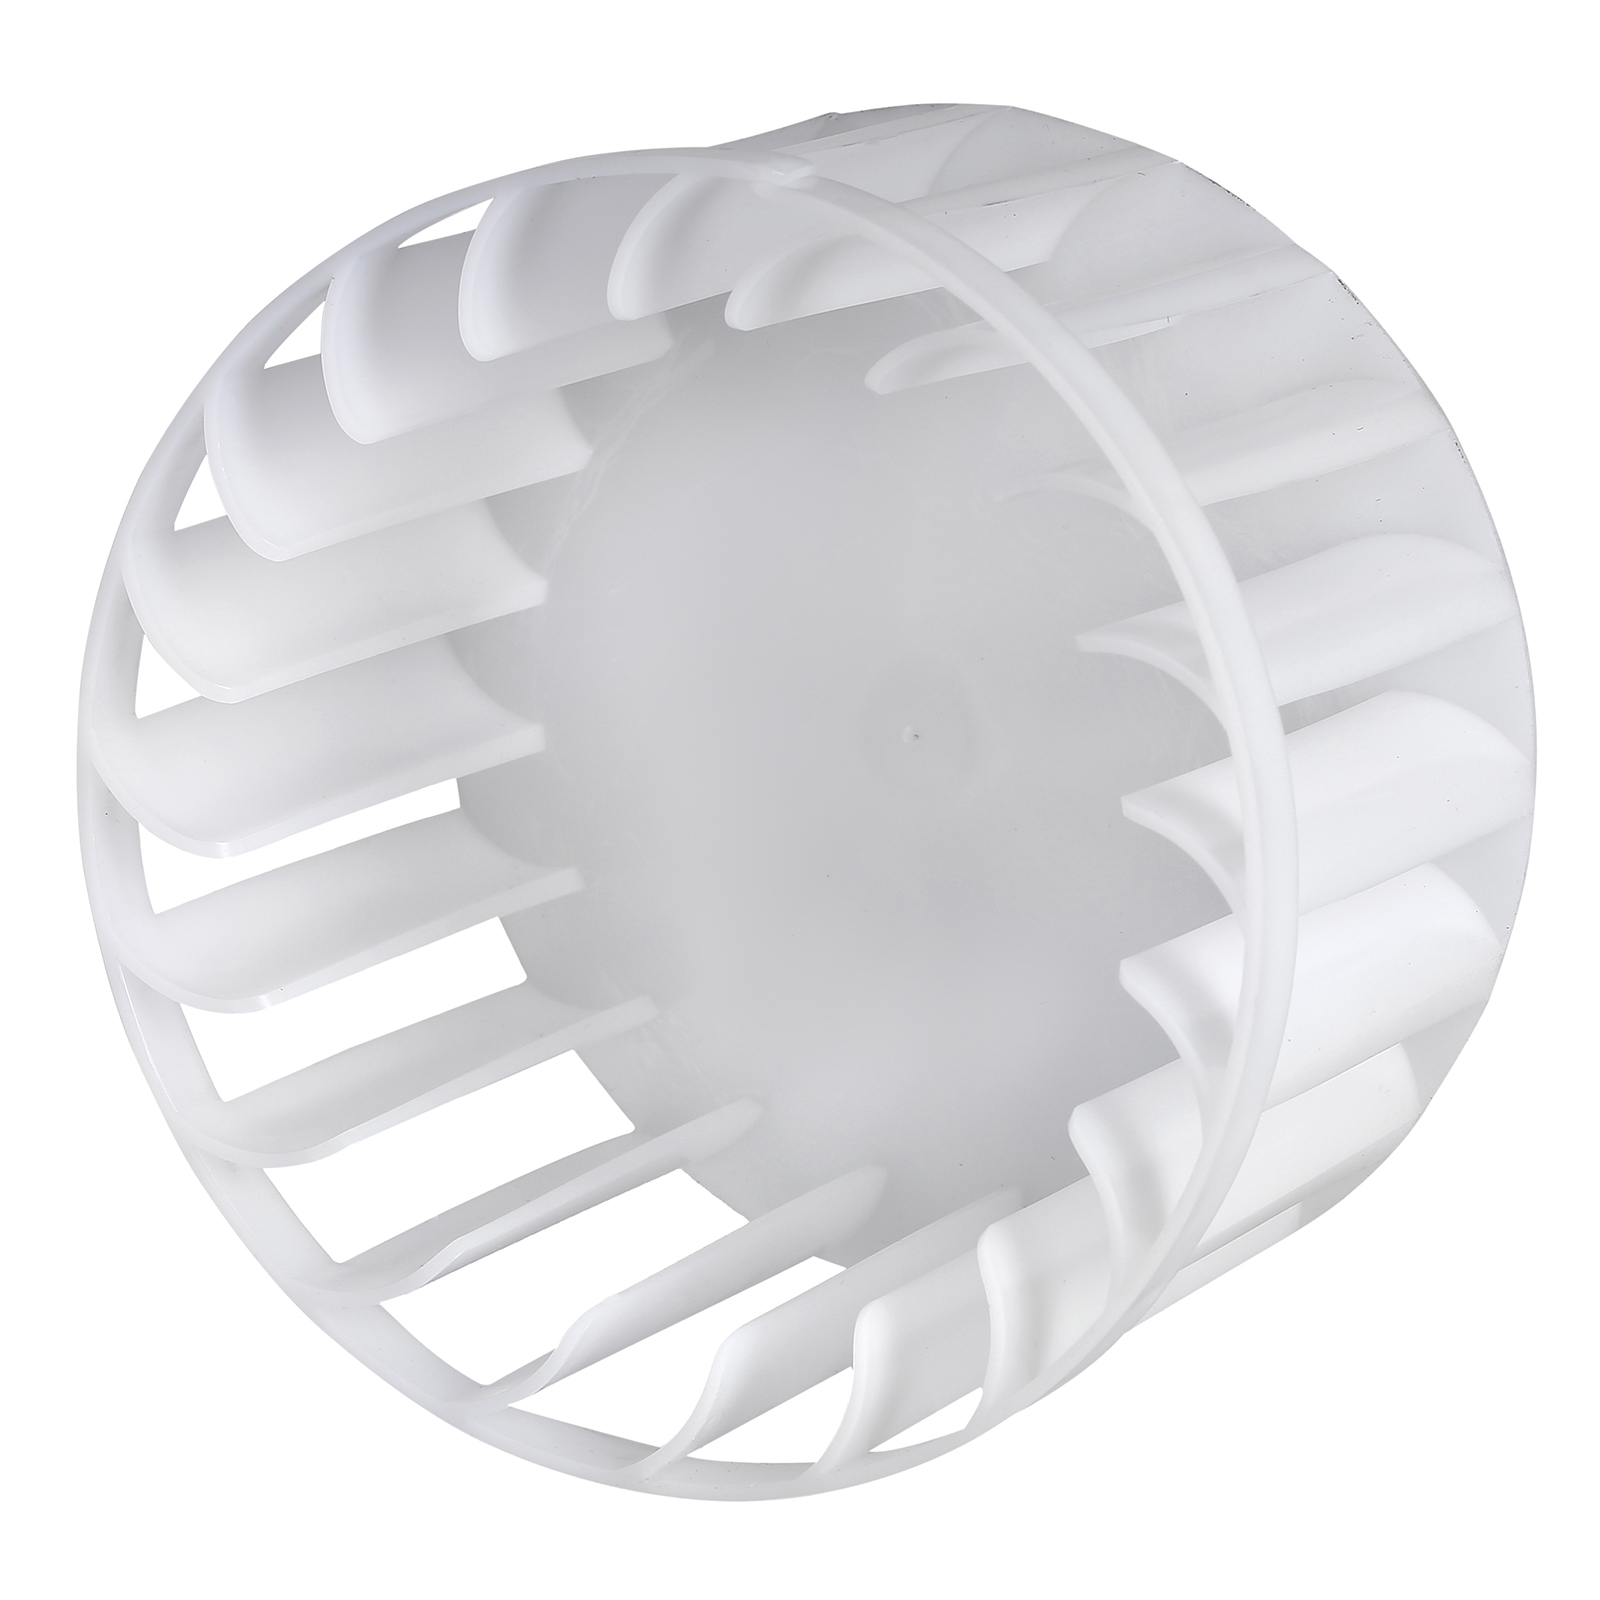 White Knight Tumble Dryer Fan - 421307740896